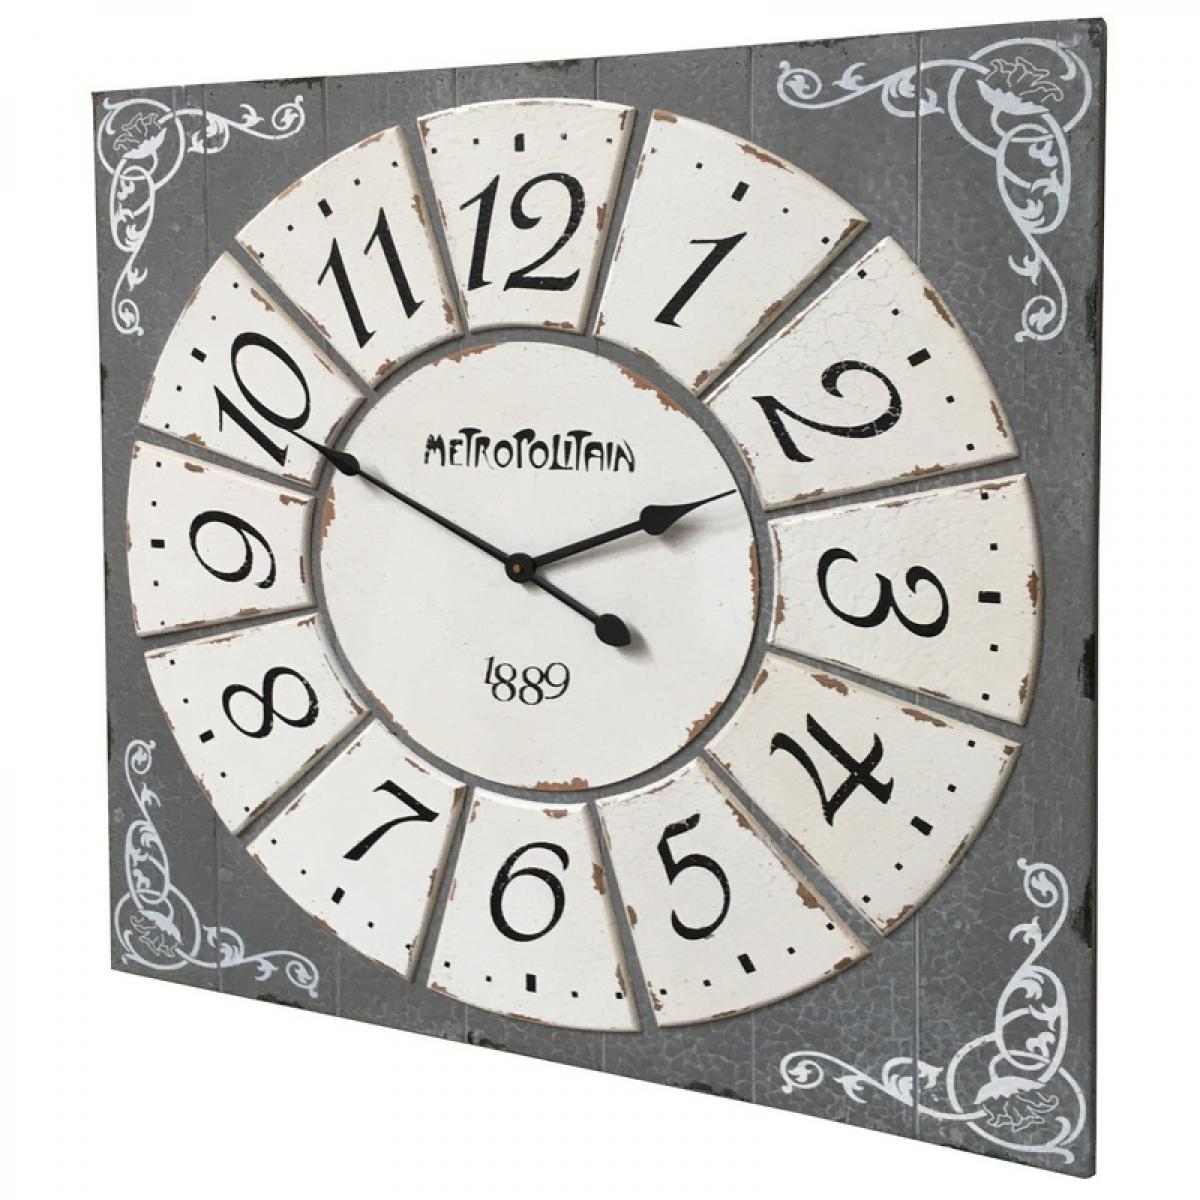 L'Originale Deco - Grande Horloge Industriel Carrée Bois Métal Fer 78 cm x 78 cm - Horloges, pendules